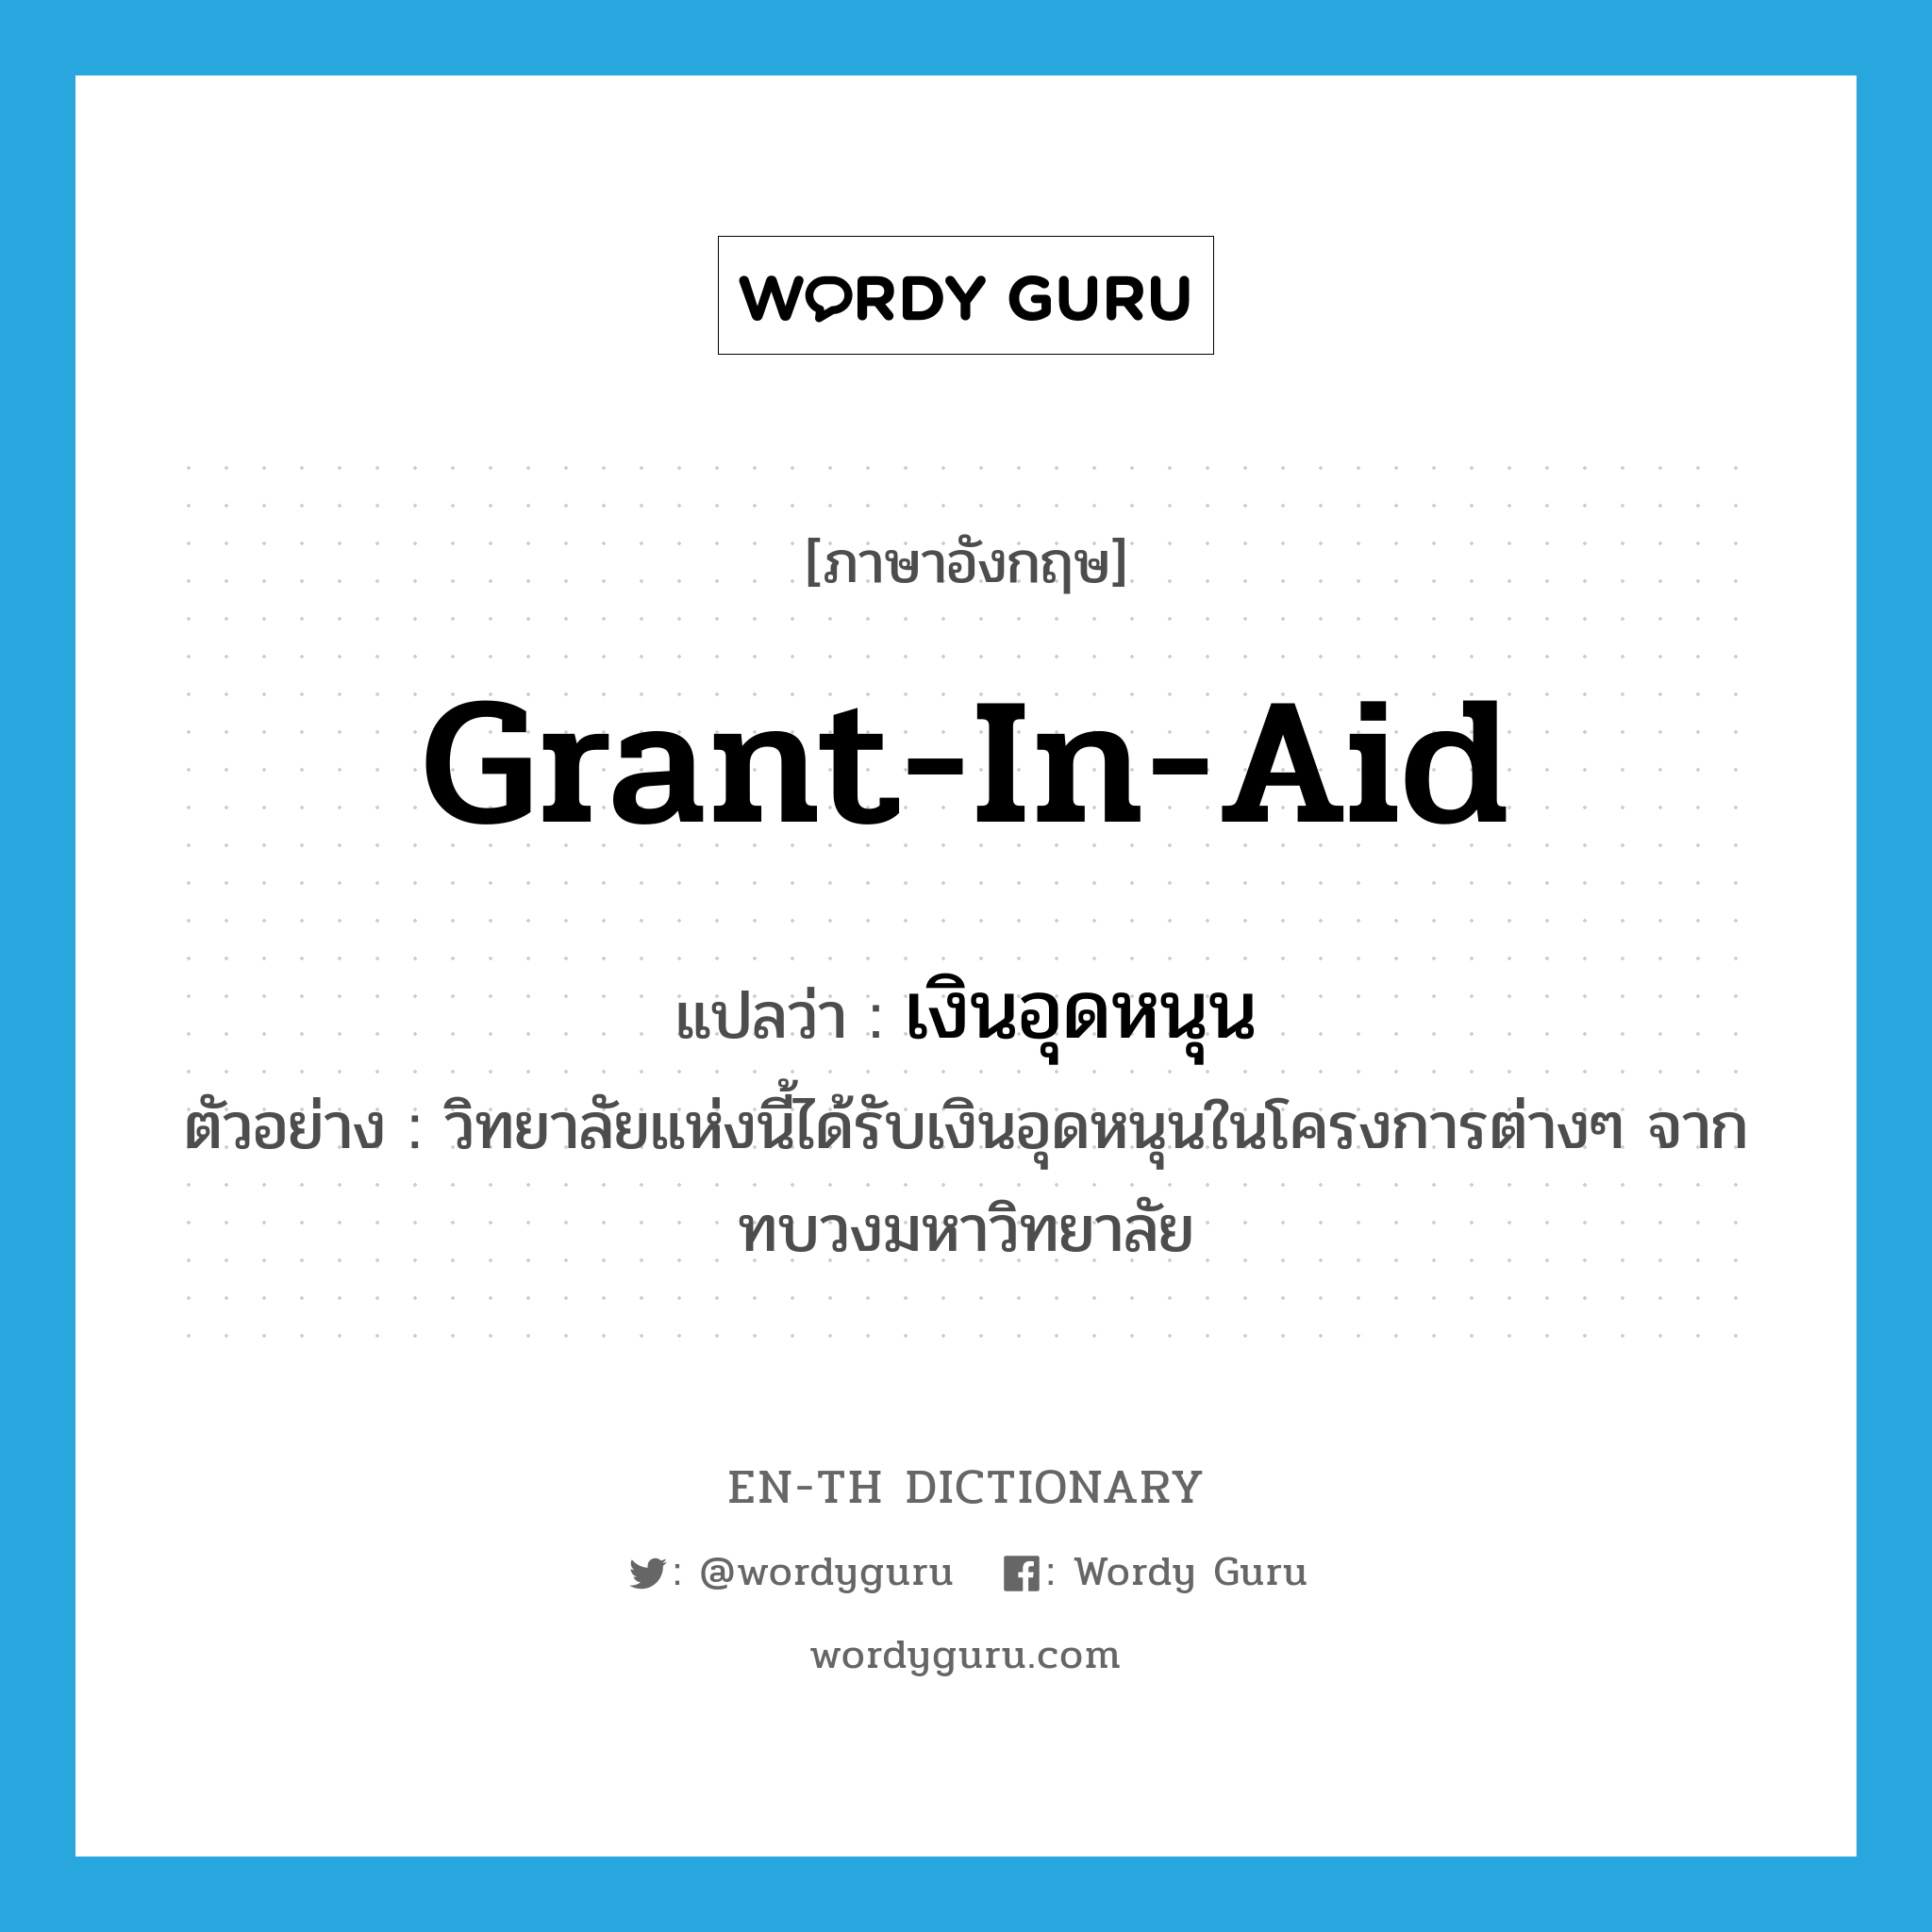 grant-in-aid แปลว่า?, คำศัพท์ภาษาอังกฤษ grant-in-aid แปลว่า เงินอุดหนุน ประเภท N ตัวอย่าง วิทยาลัยแห่งนี้ได้รับเงินอุดหนุนในโครงการต่างๆ จากทบวงมหาวิทยาลัย หมวด N